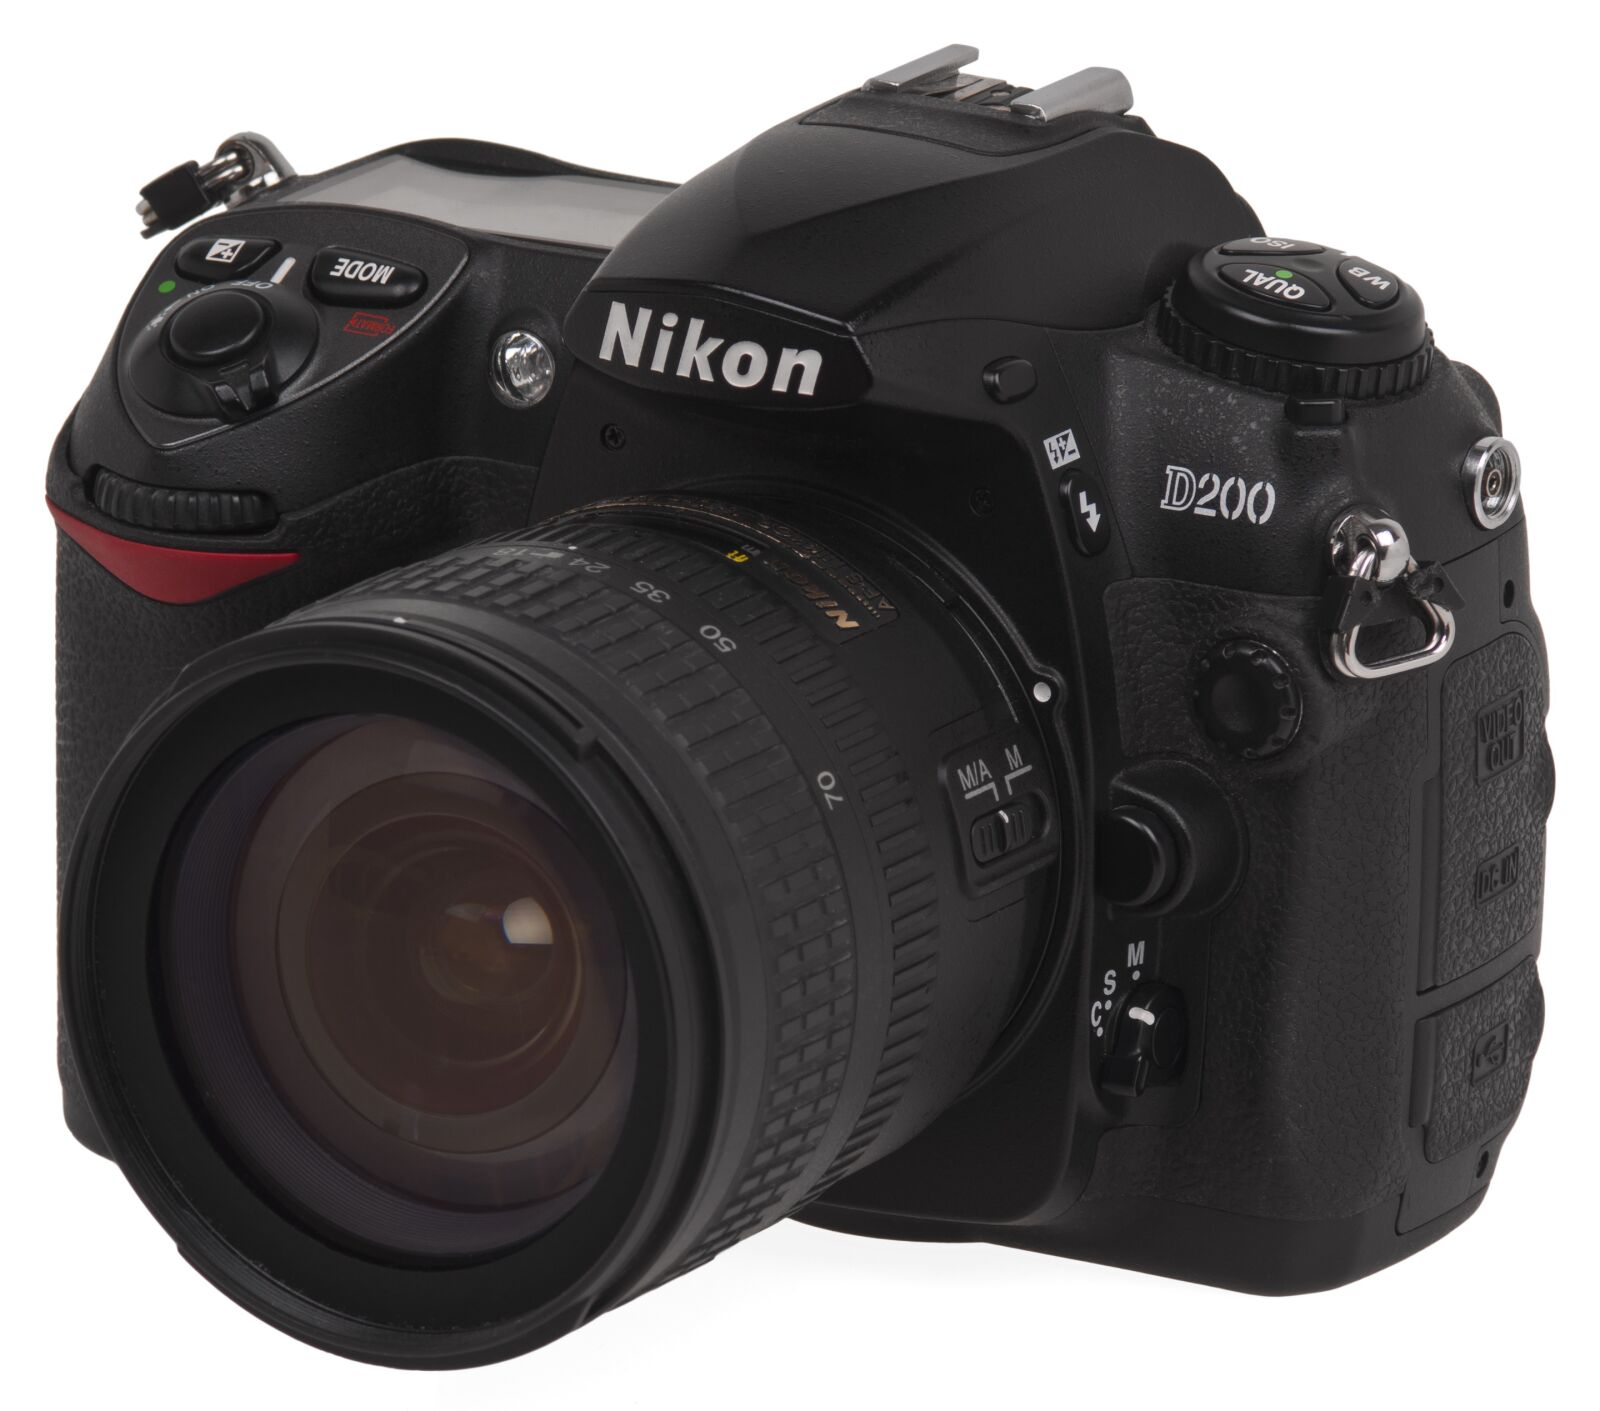 Sony Alpha DSLR-A700 sample photo. Nikon, d200, and photography